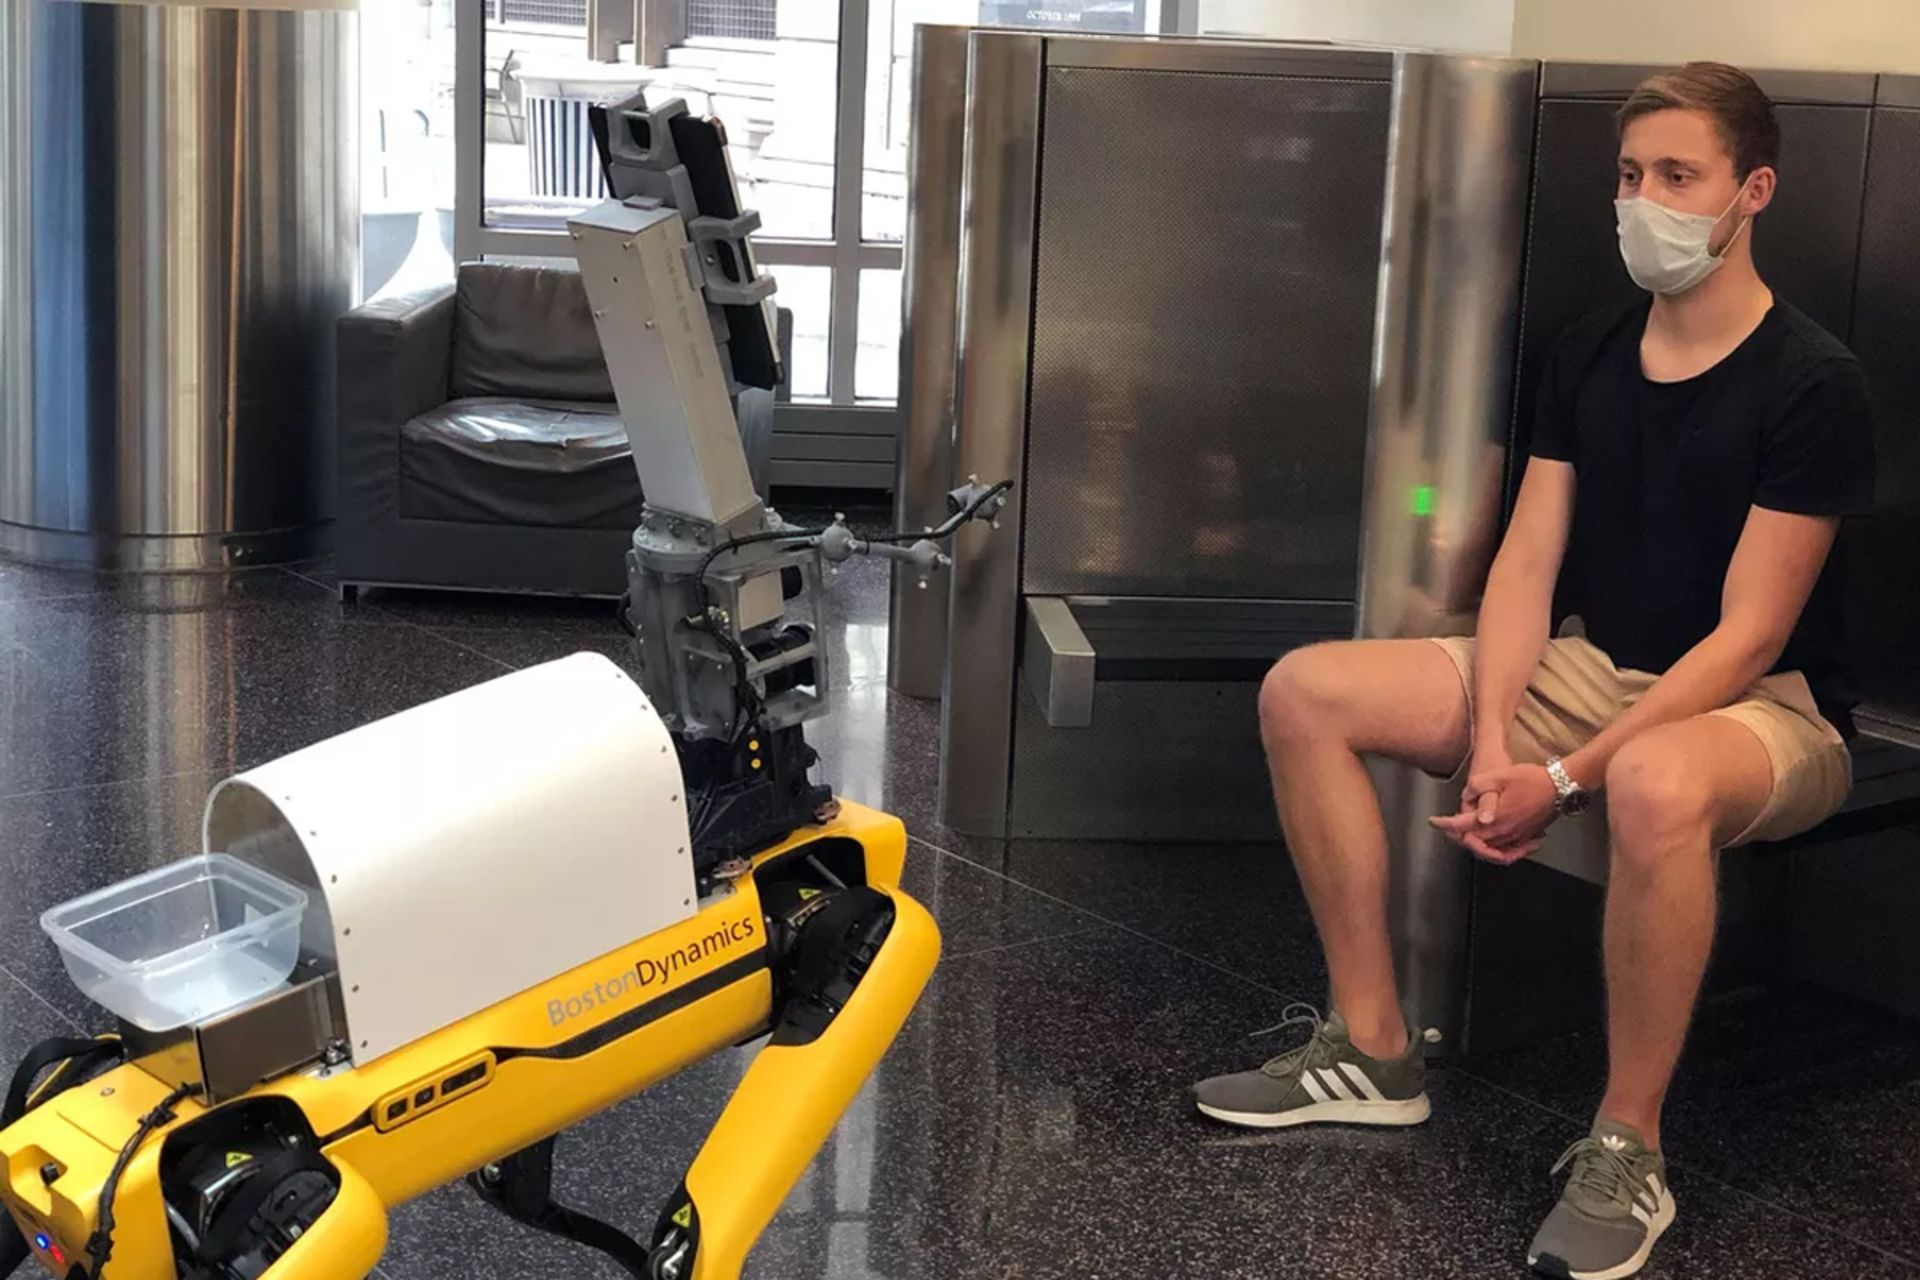 ربات اسپات  بوستون داینامیکس / Boston Dynamics Spot درحال تریاژ بیمار